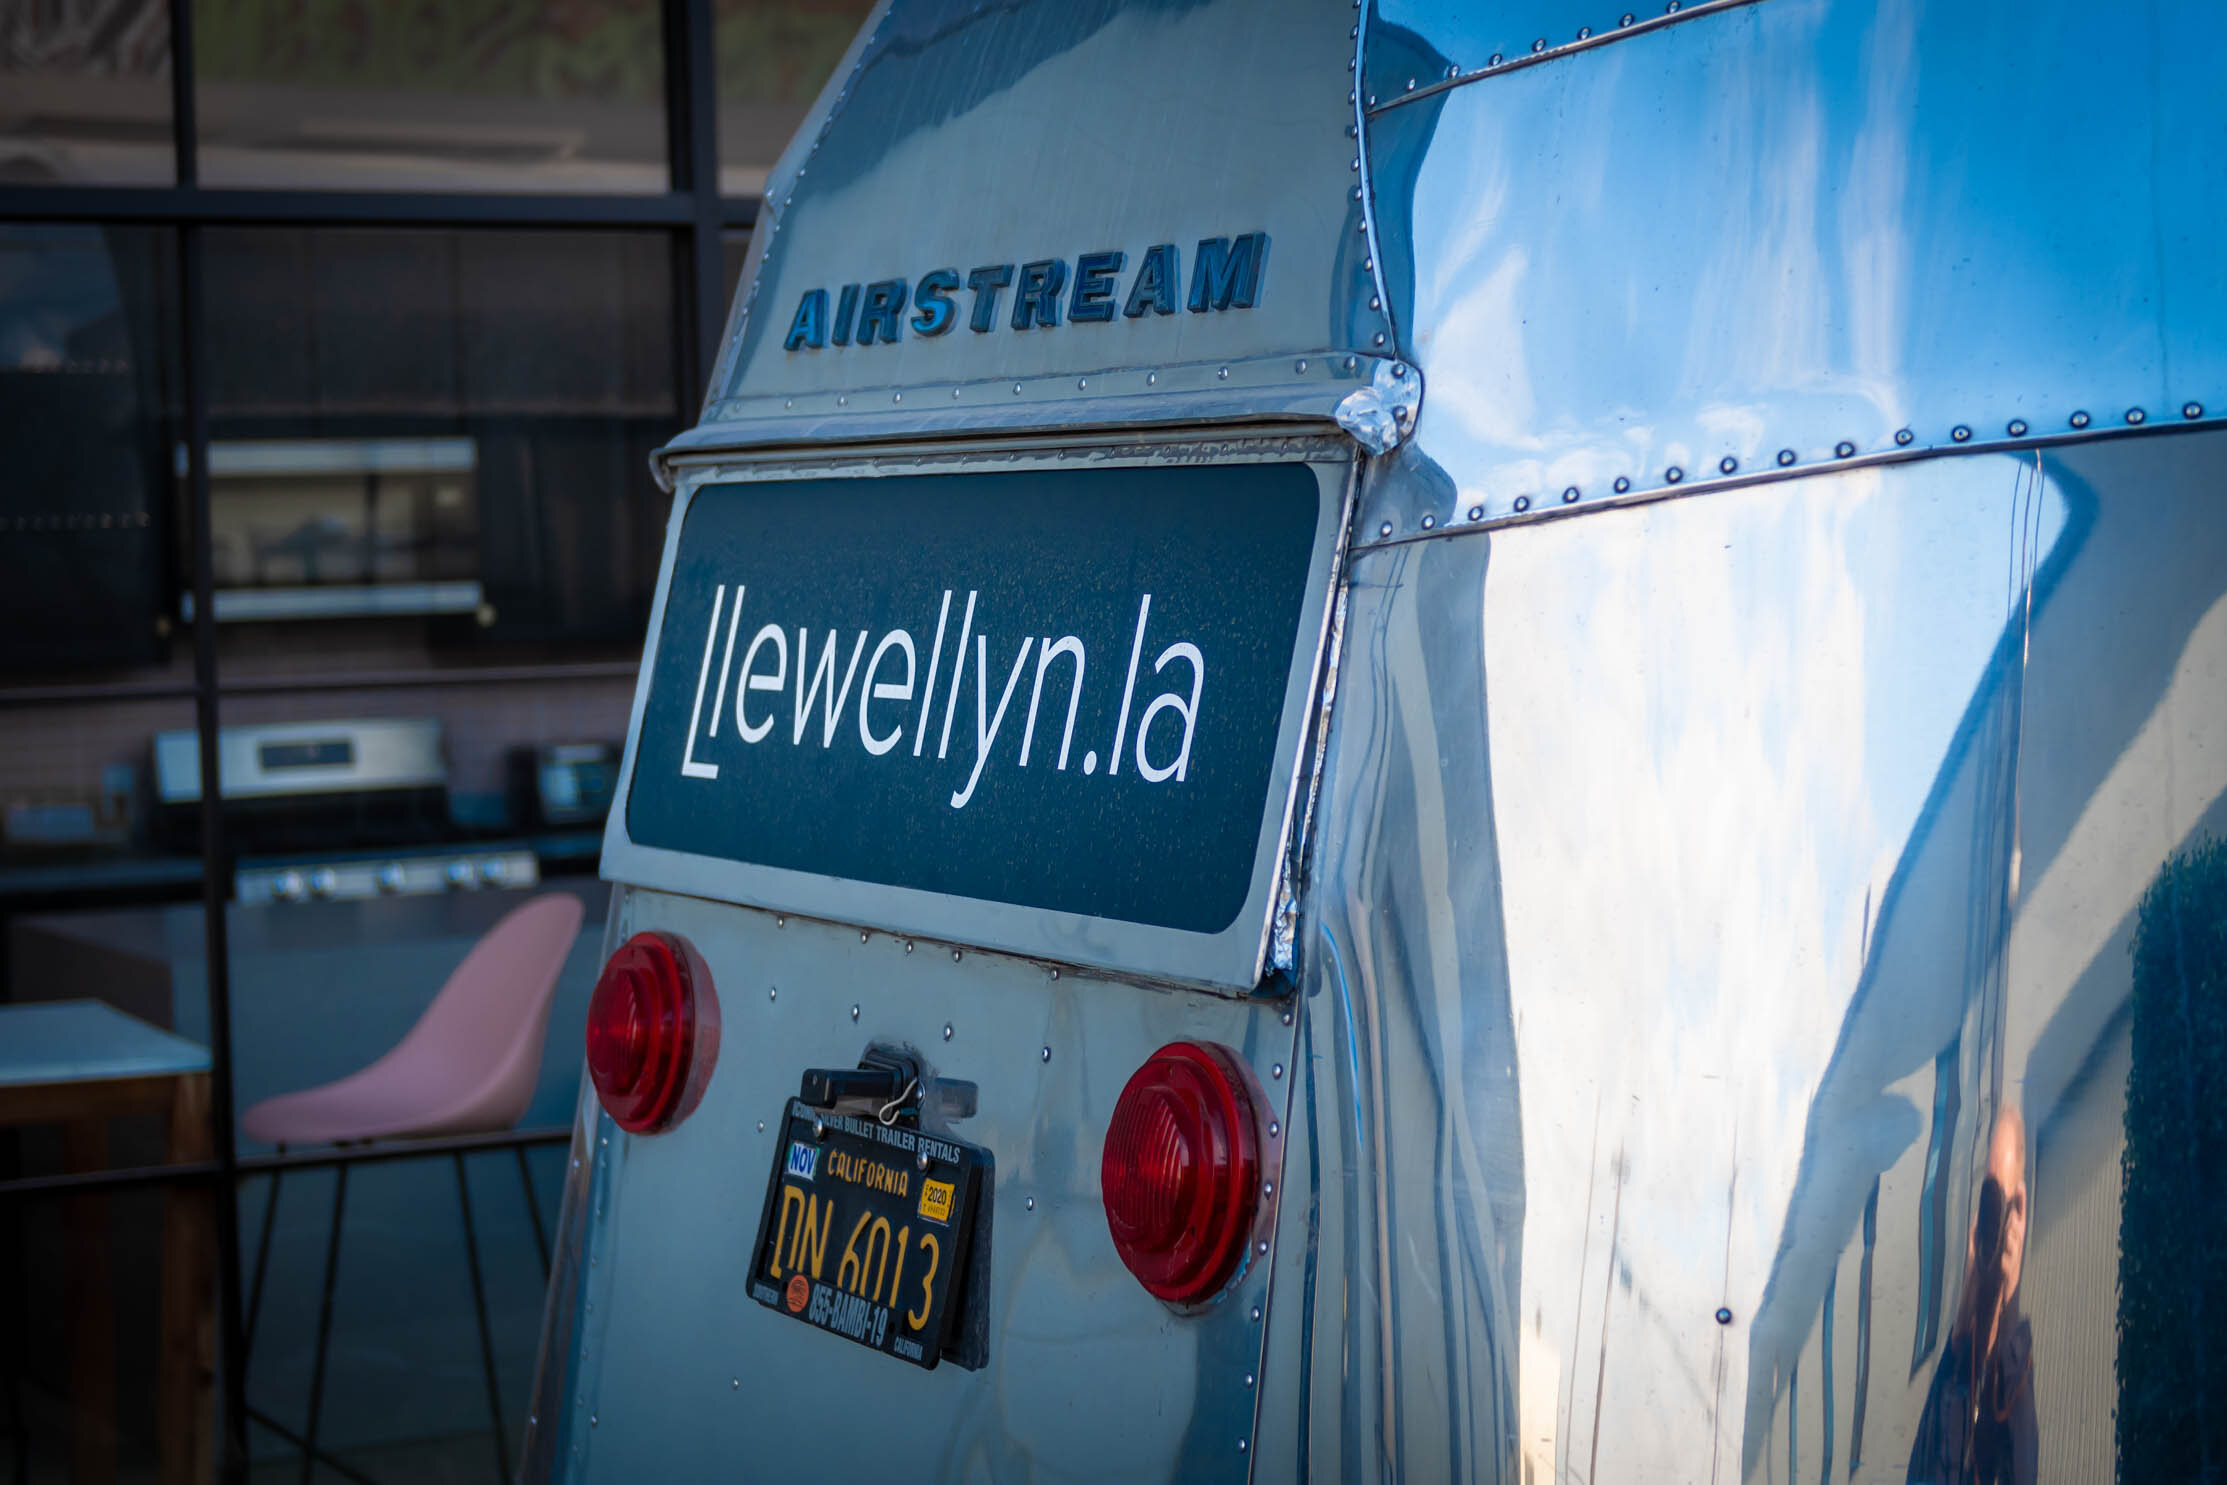 Llewellyn - Airstream Leasing Trailer-4.jpg